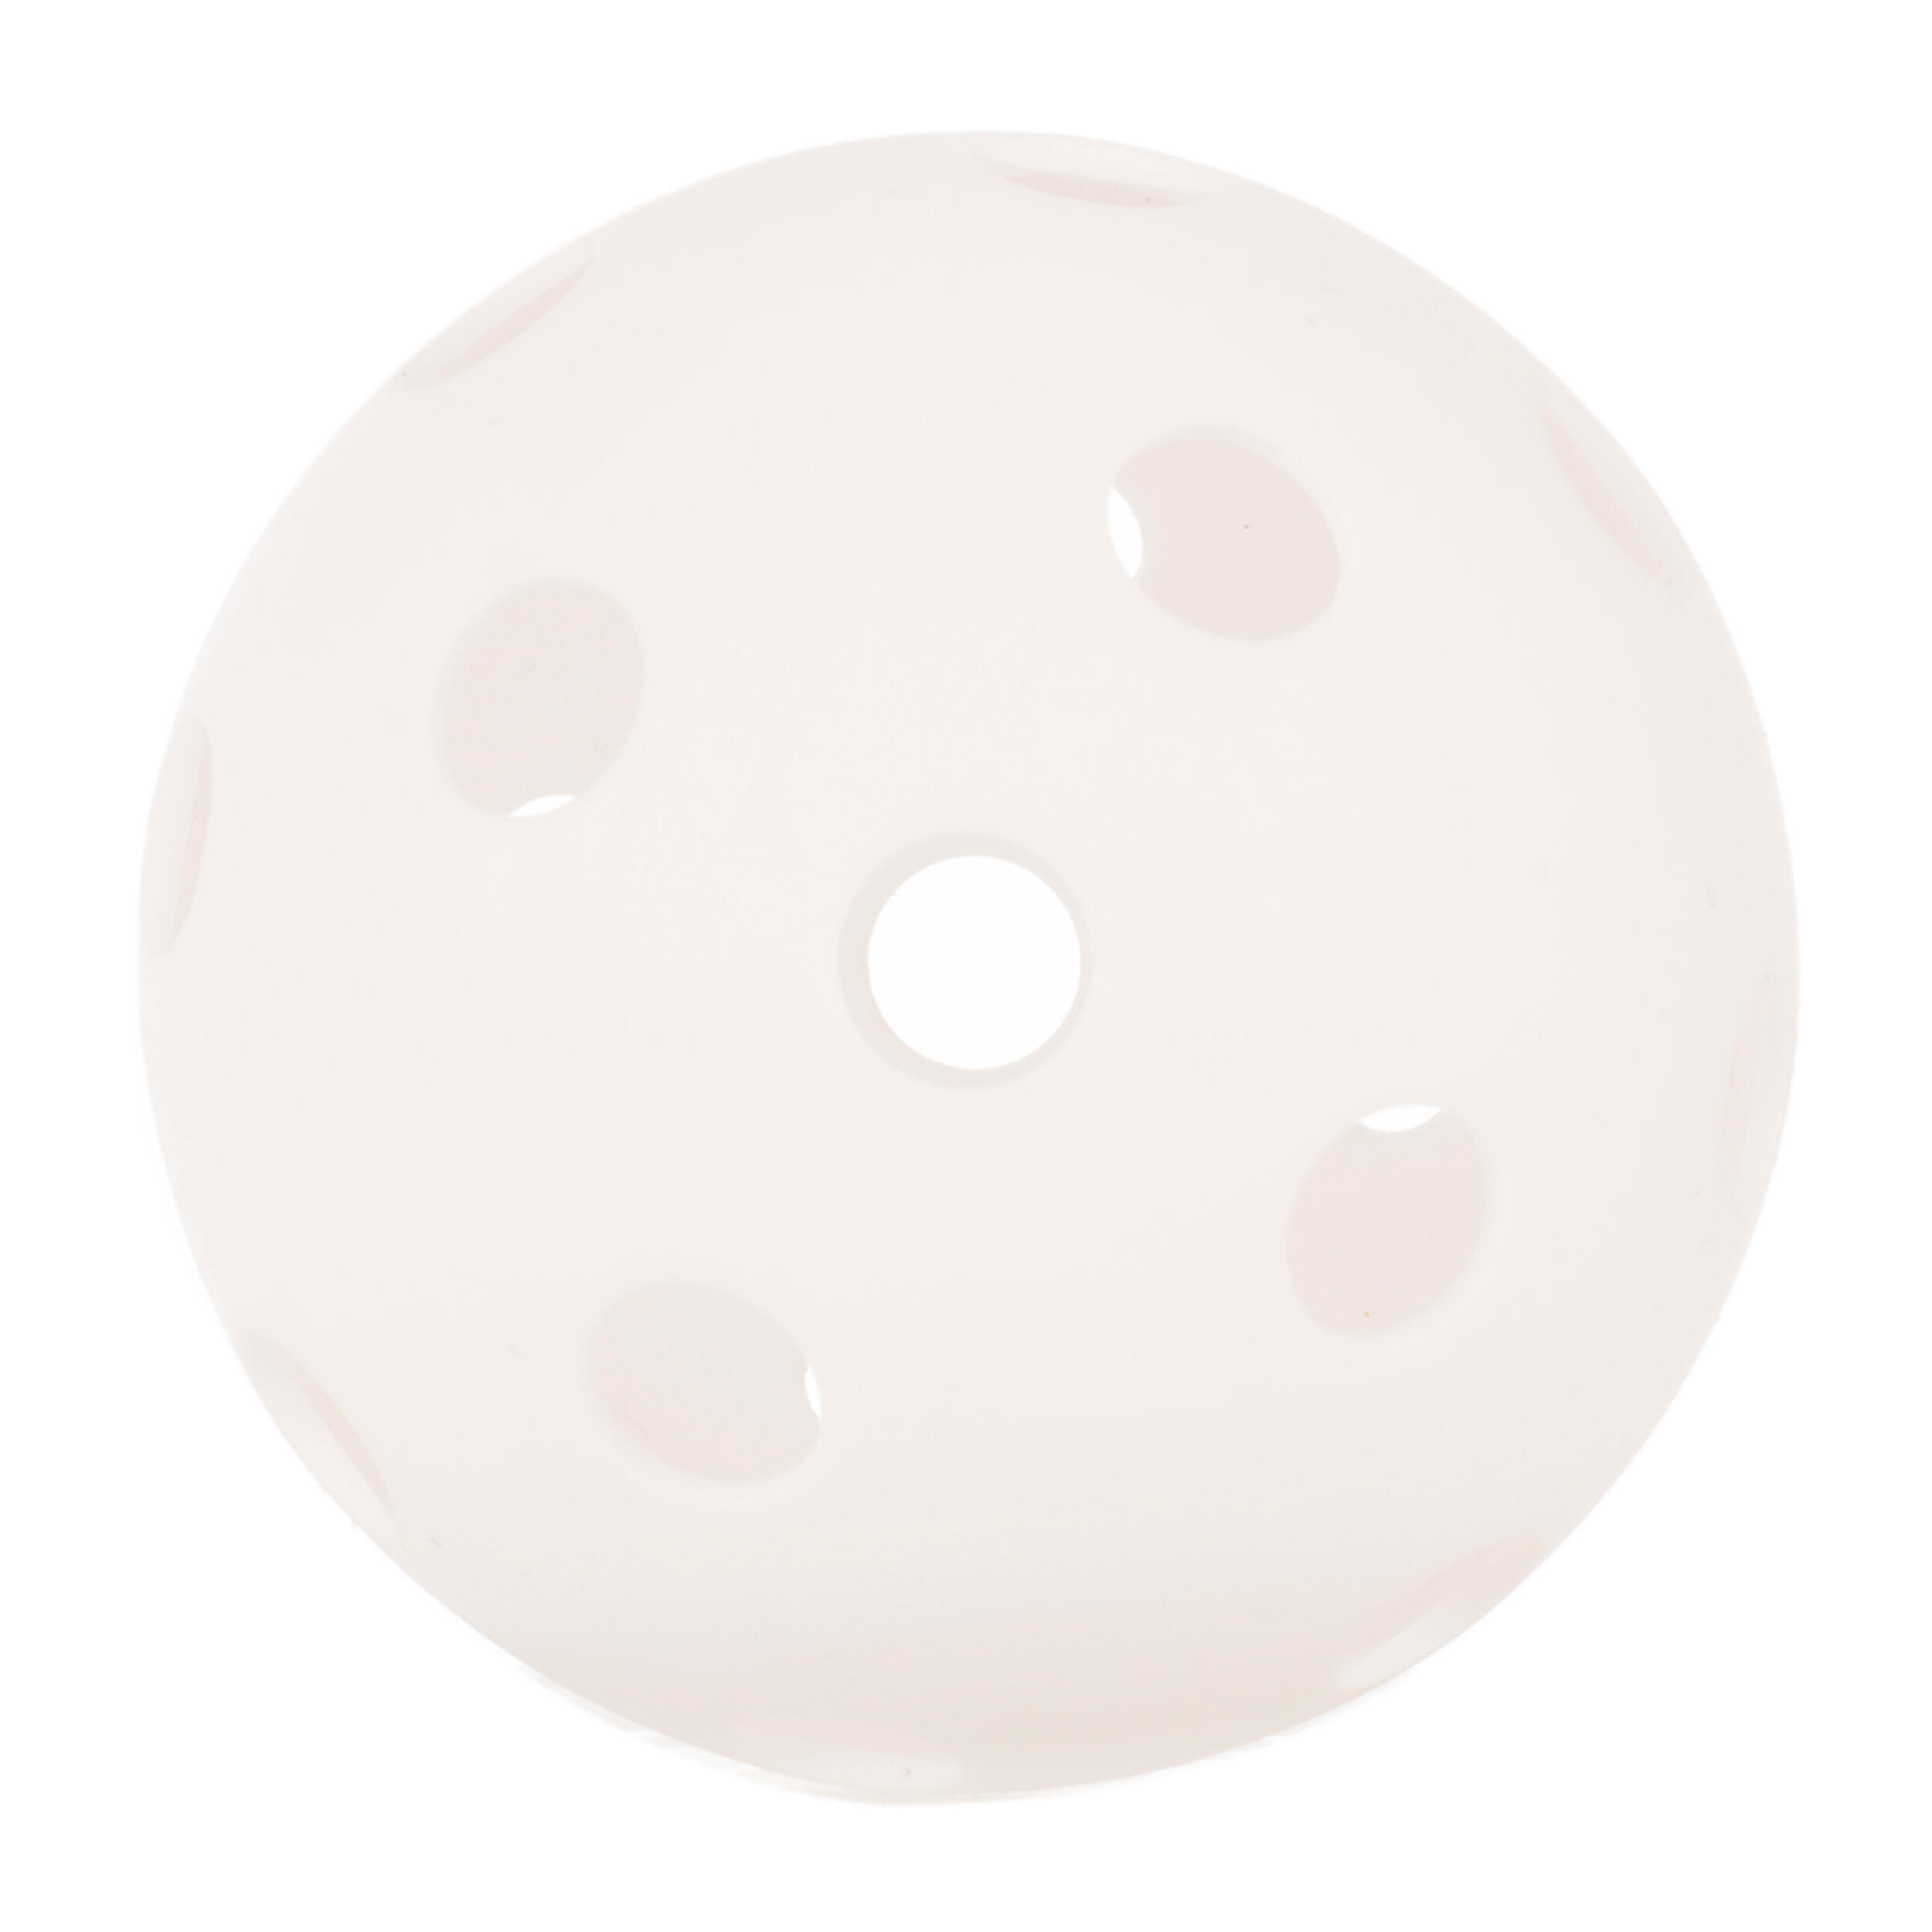 Image of Pickleball Ball - White